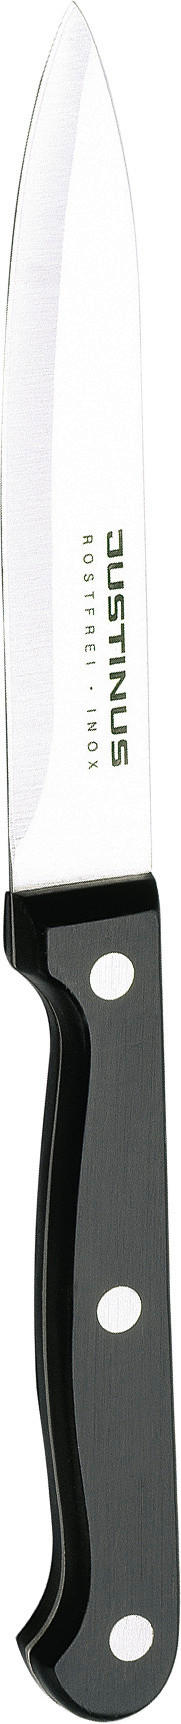 ÁLTALÁNOS KÉS 19,5 cm  - Konventionell, Műanyag/Fém (19,5cm) - Boxxx